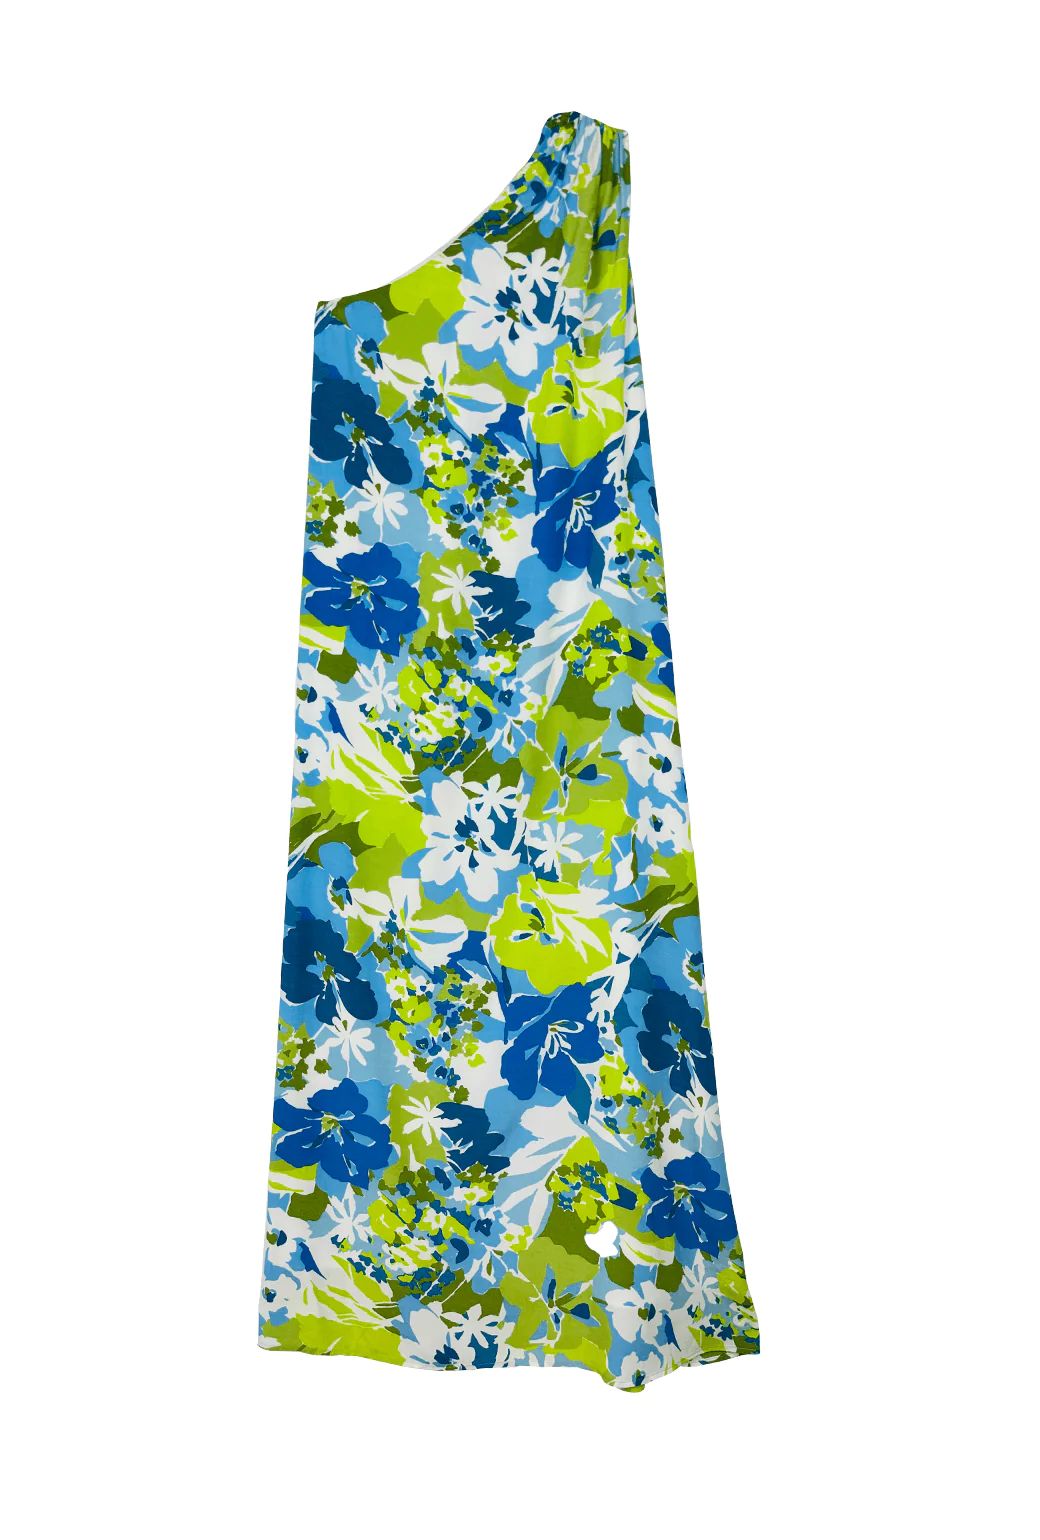 Buru x Kelly Go Lightly Caryatid Dress - Aqua Floral | Shop BURU